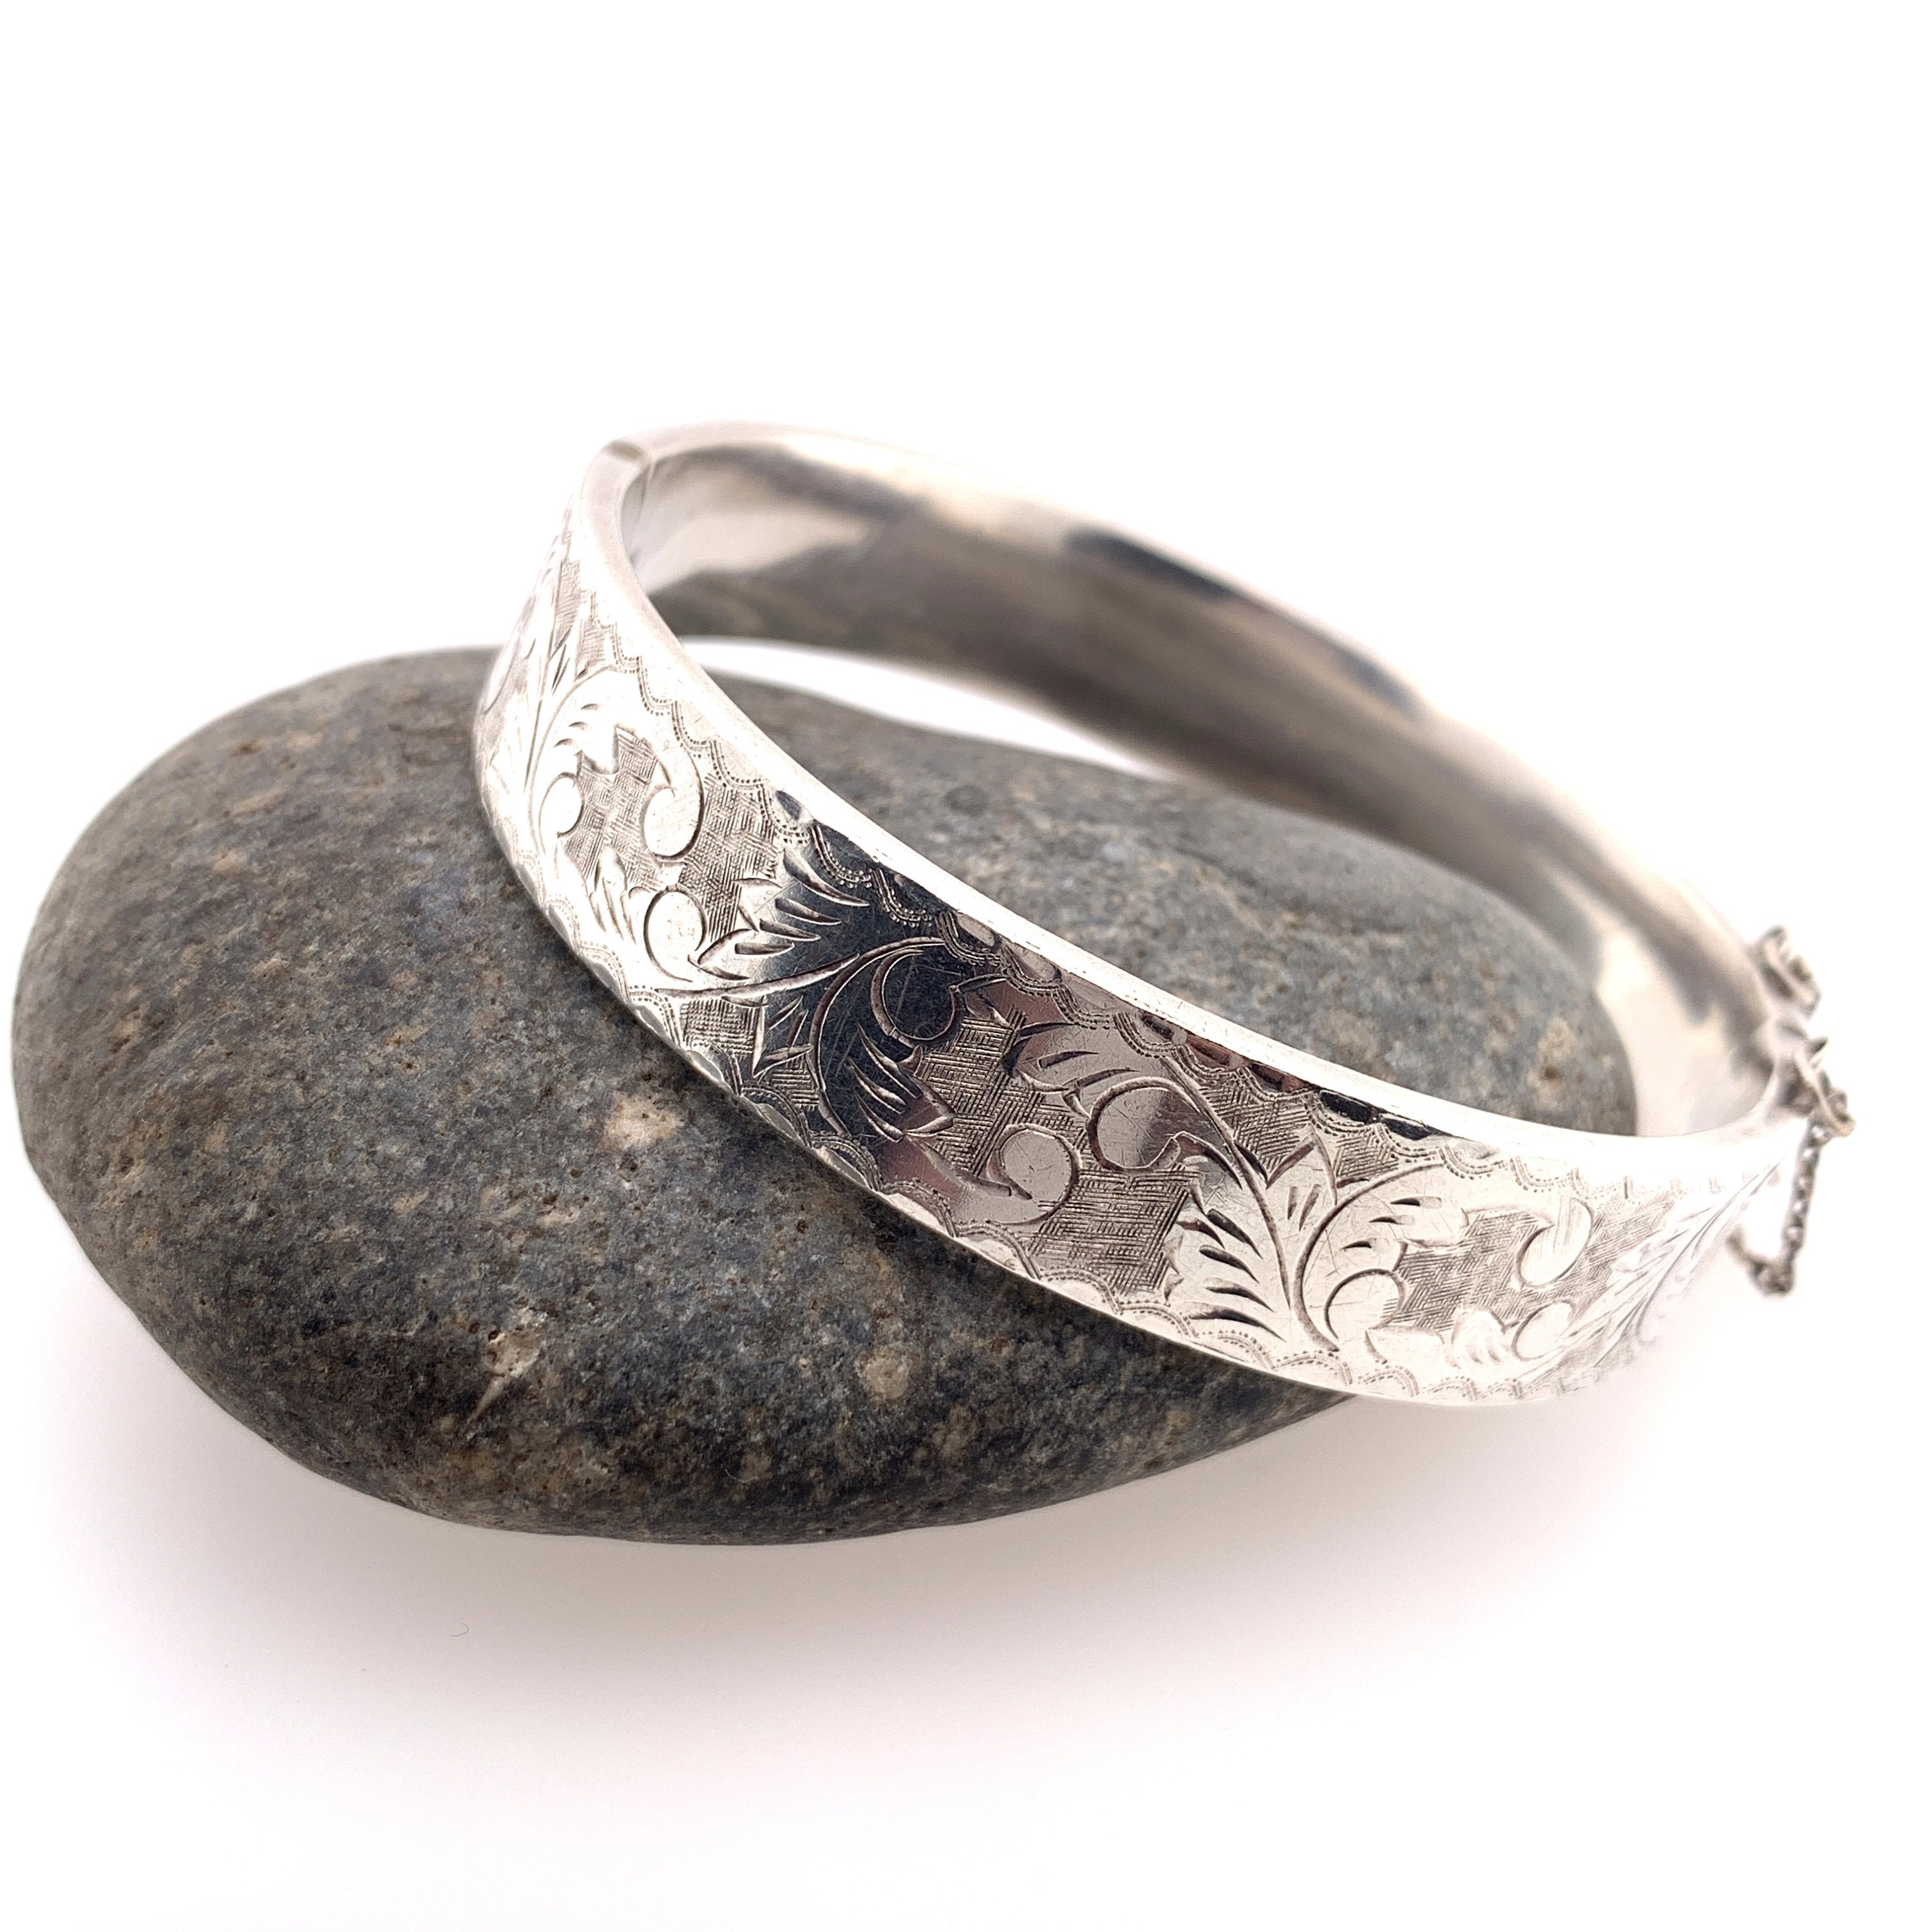 Etched Bracelet with Safety | Vintage Sterling Silver | Leaf Patternedthumbnail